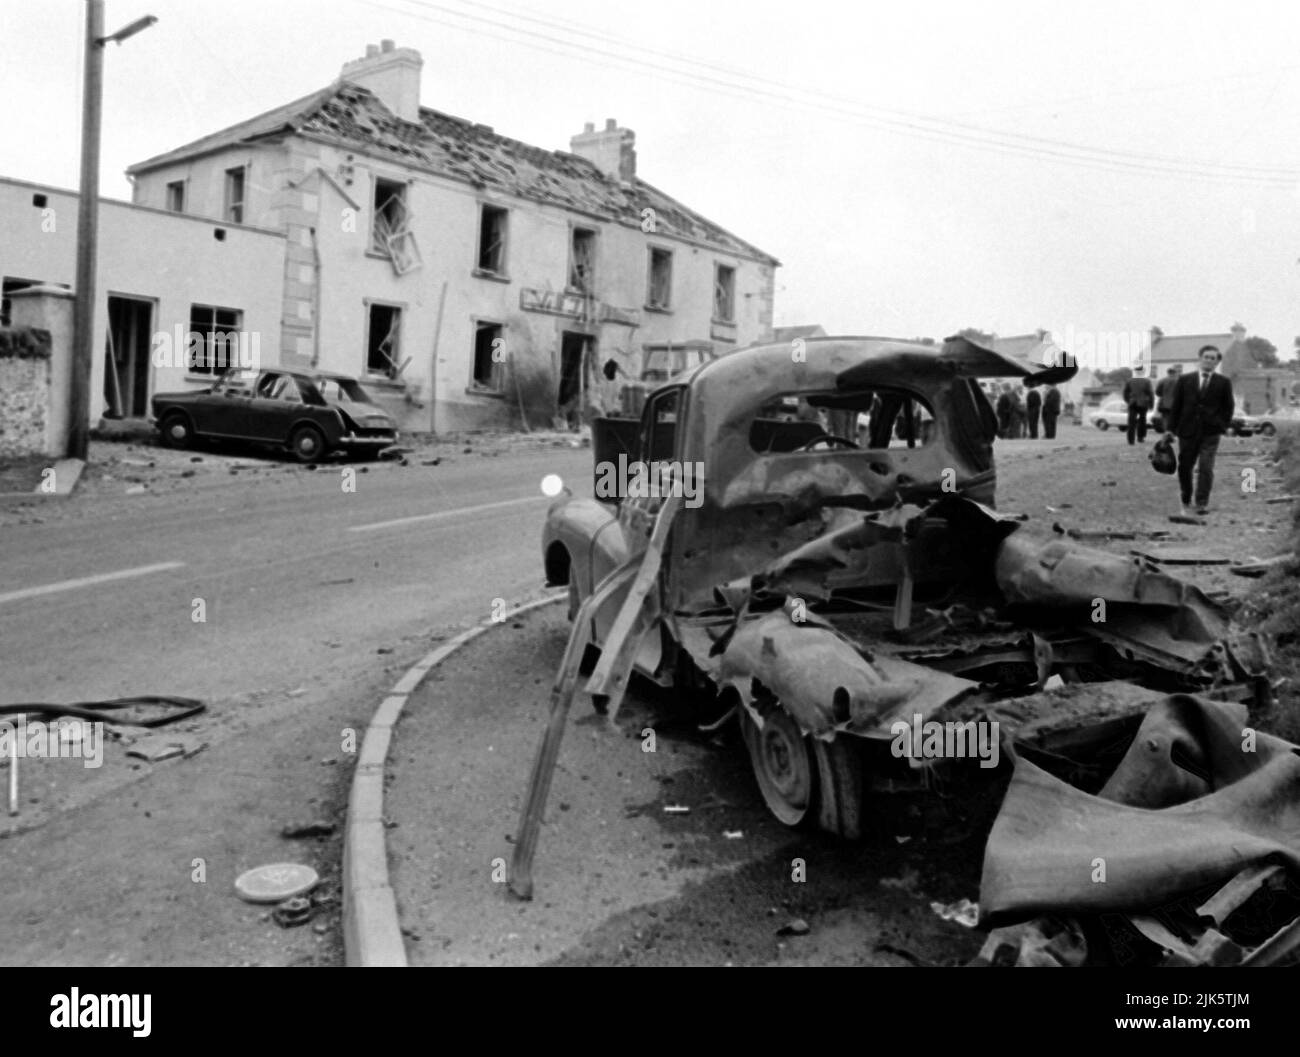 Foto del file datata 31/07/72 della scena fuori dalle armi di Beavpont, nel villaggio di Claudy di Co Londonderry il 31 luglio 1972, dopo che tre bombe auto esplose uccidendo nove persone. I sopravvissuti e le famiglie di coloro che sono stati uccisi negli attentati di Claudy 50 anni fa si riuniranno nel tranquillo villaggio di Co Londonderry per celebrare l'anniversario. Foto Stock